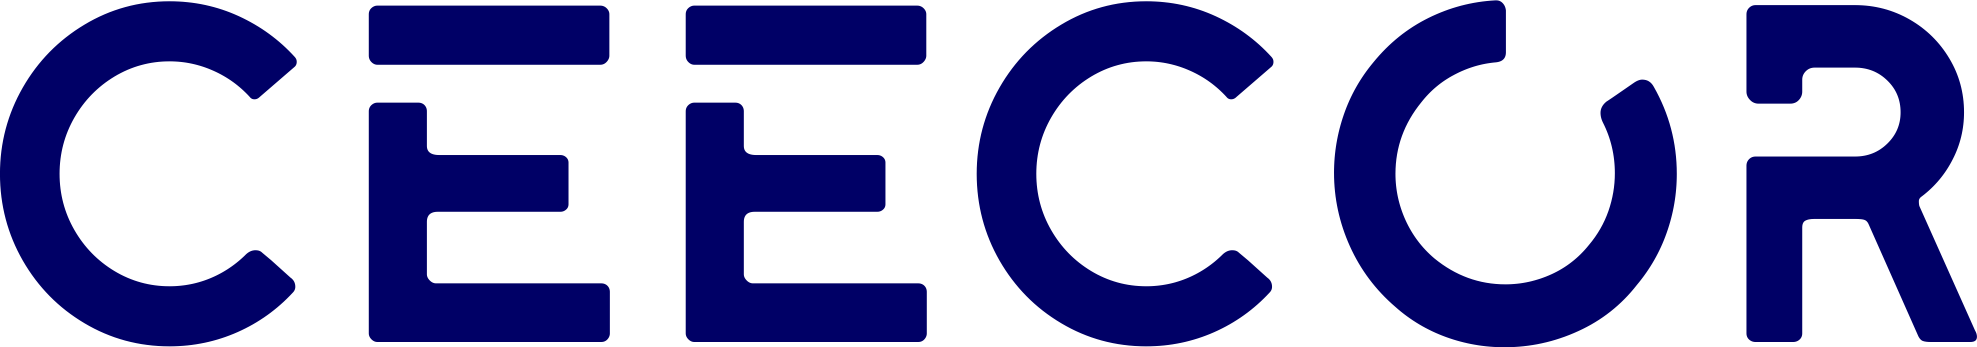 Logo CEECOR